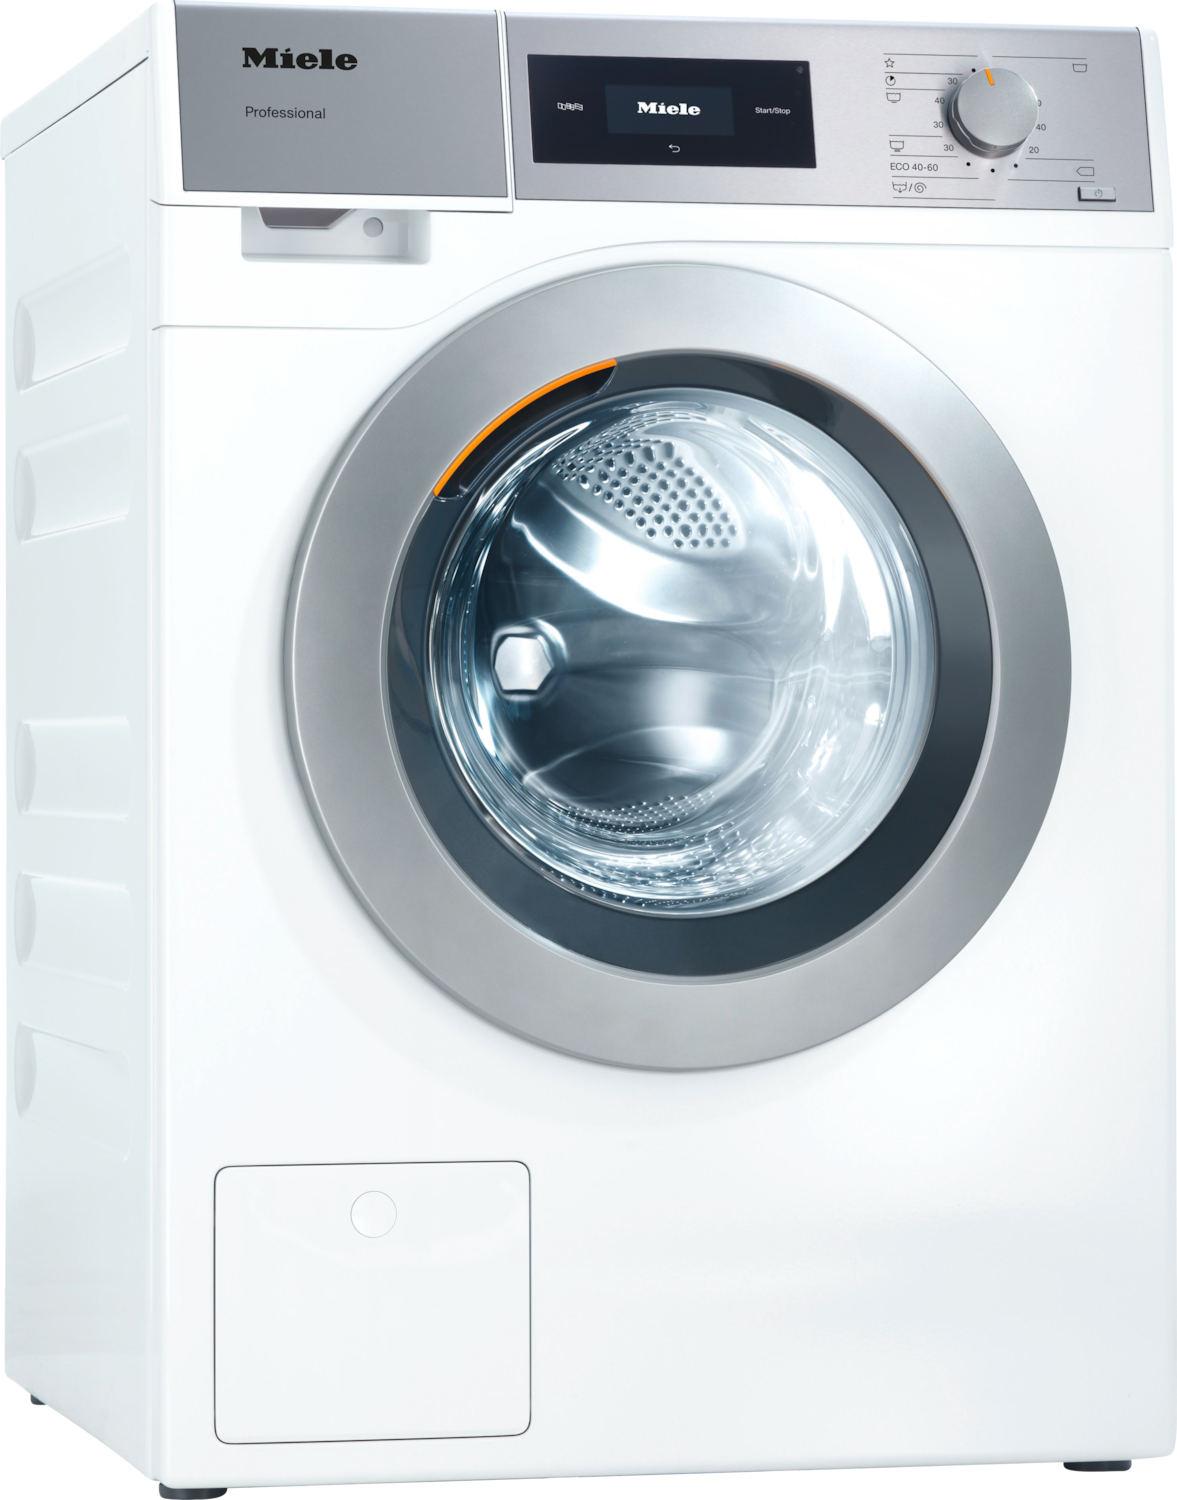 PWM 508 [EL DP] Professional Waschmaschine, Kleiner Riese, elektrobeheizt, mit Ablaufpumpe Produktbild Front View ZOOM